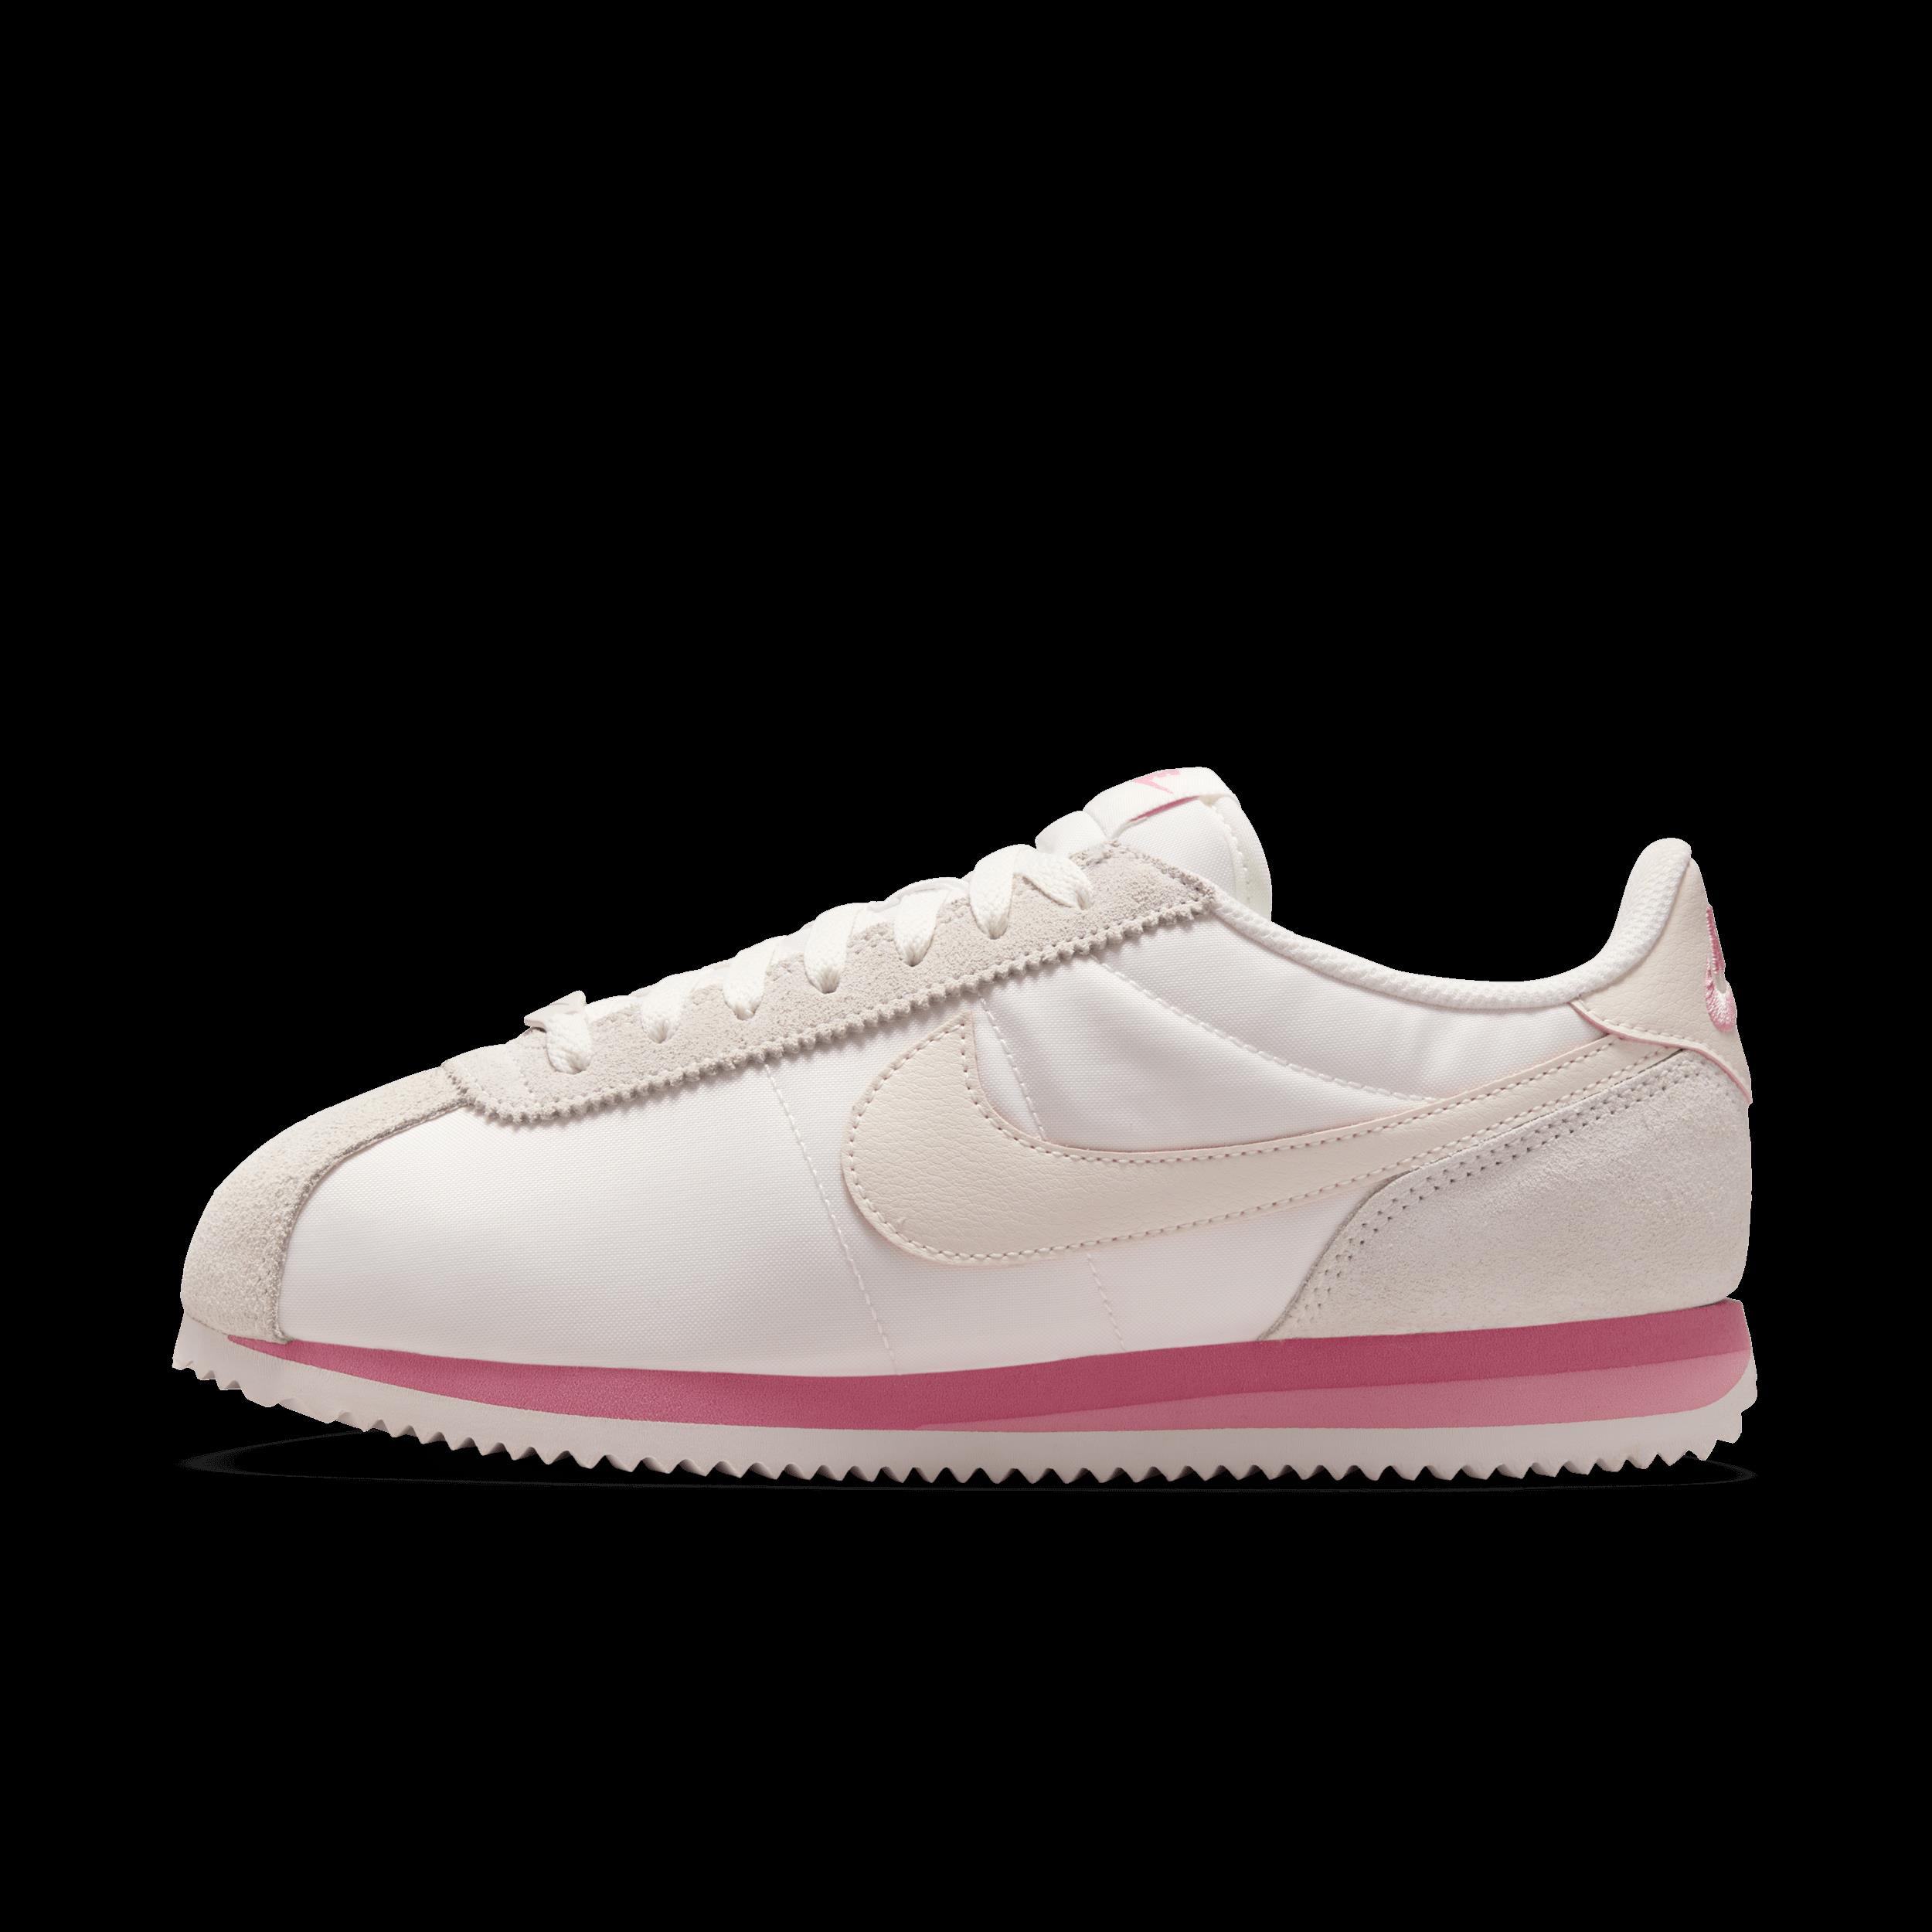 Nike Cortez Textile Women's Shoes - Pink